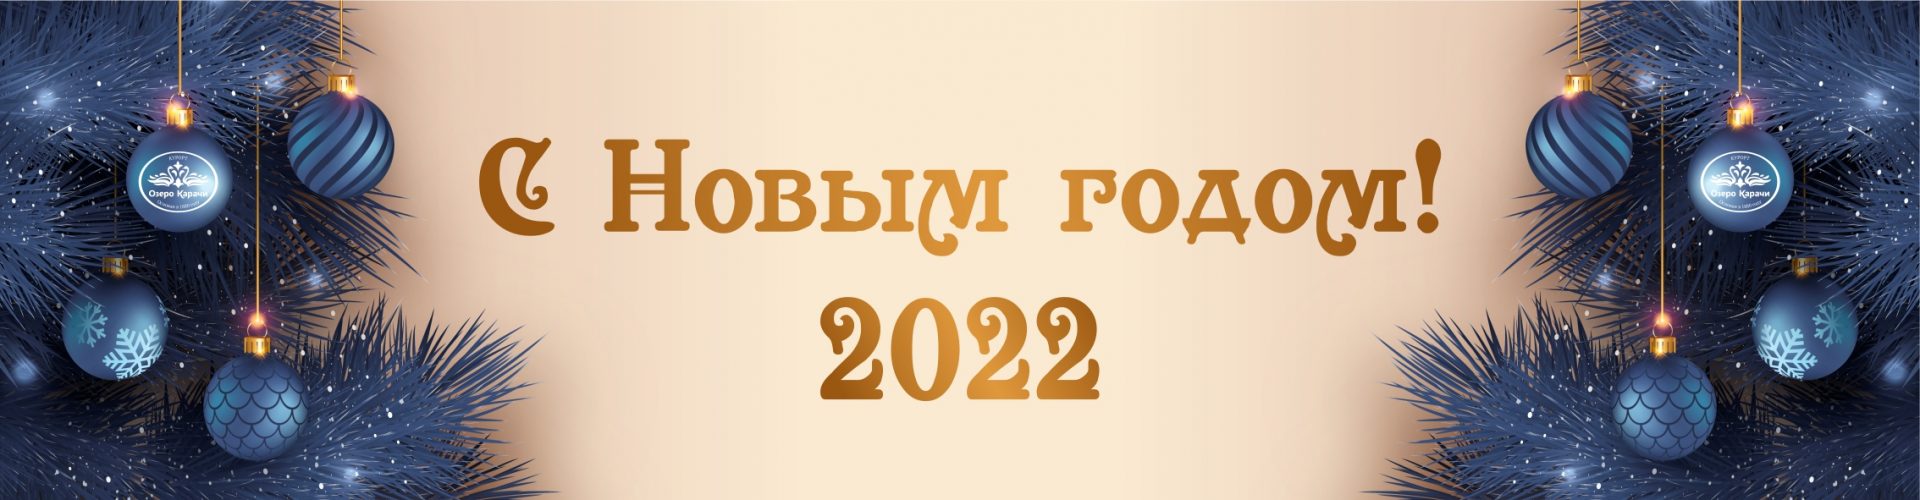 Новый Год 2022  в санатории Озеро Карачи!